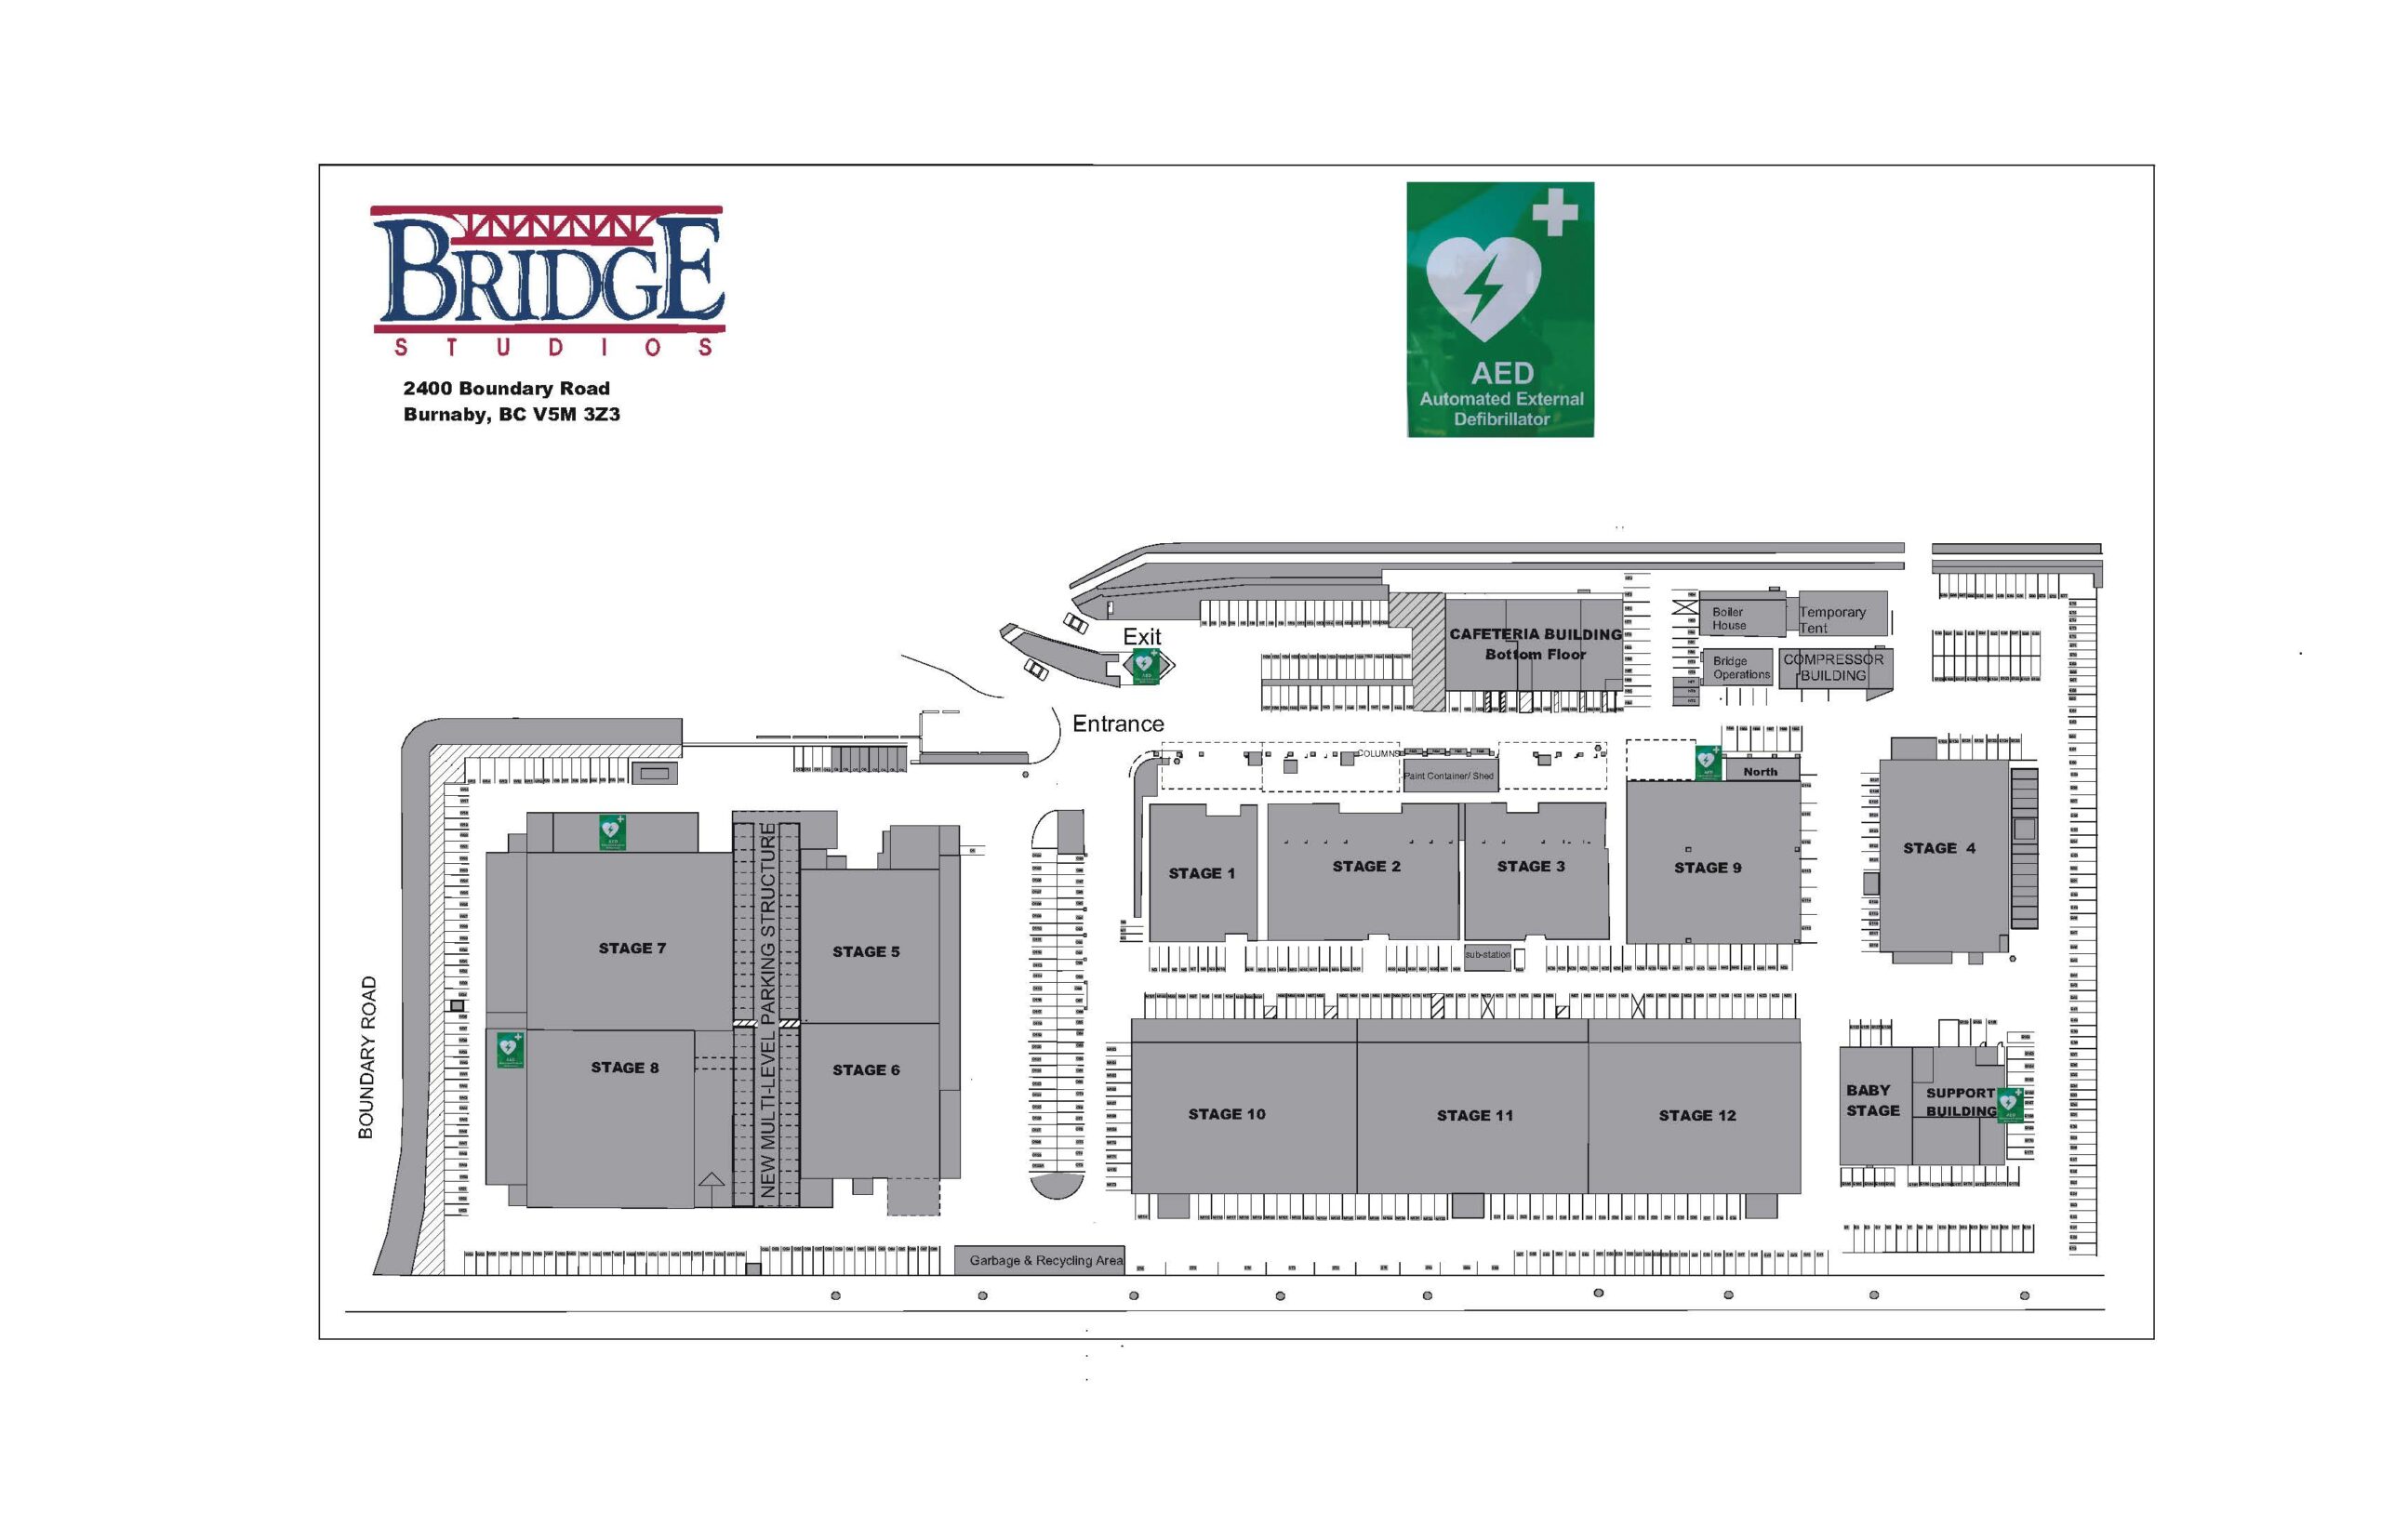 AED locations at Bridge Studios (updated).